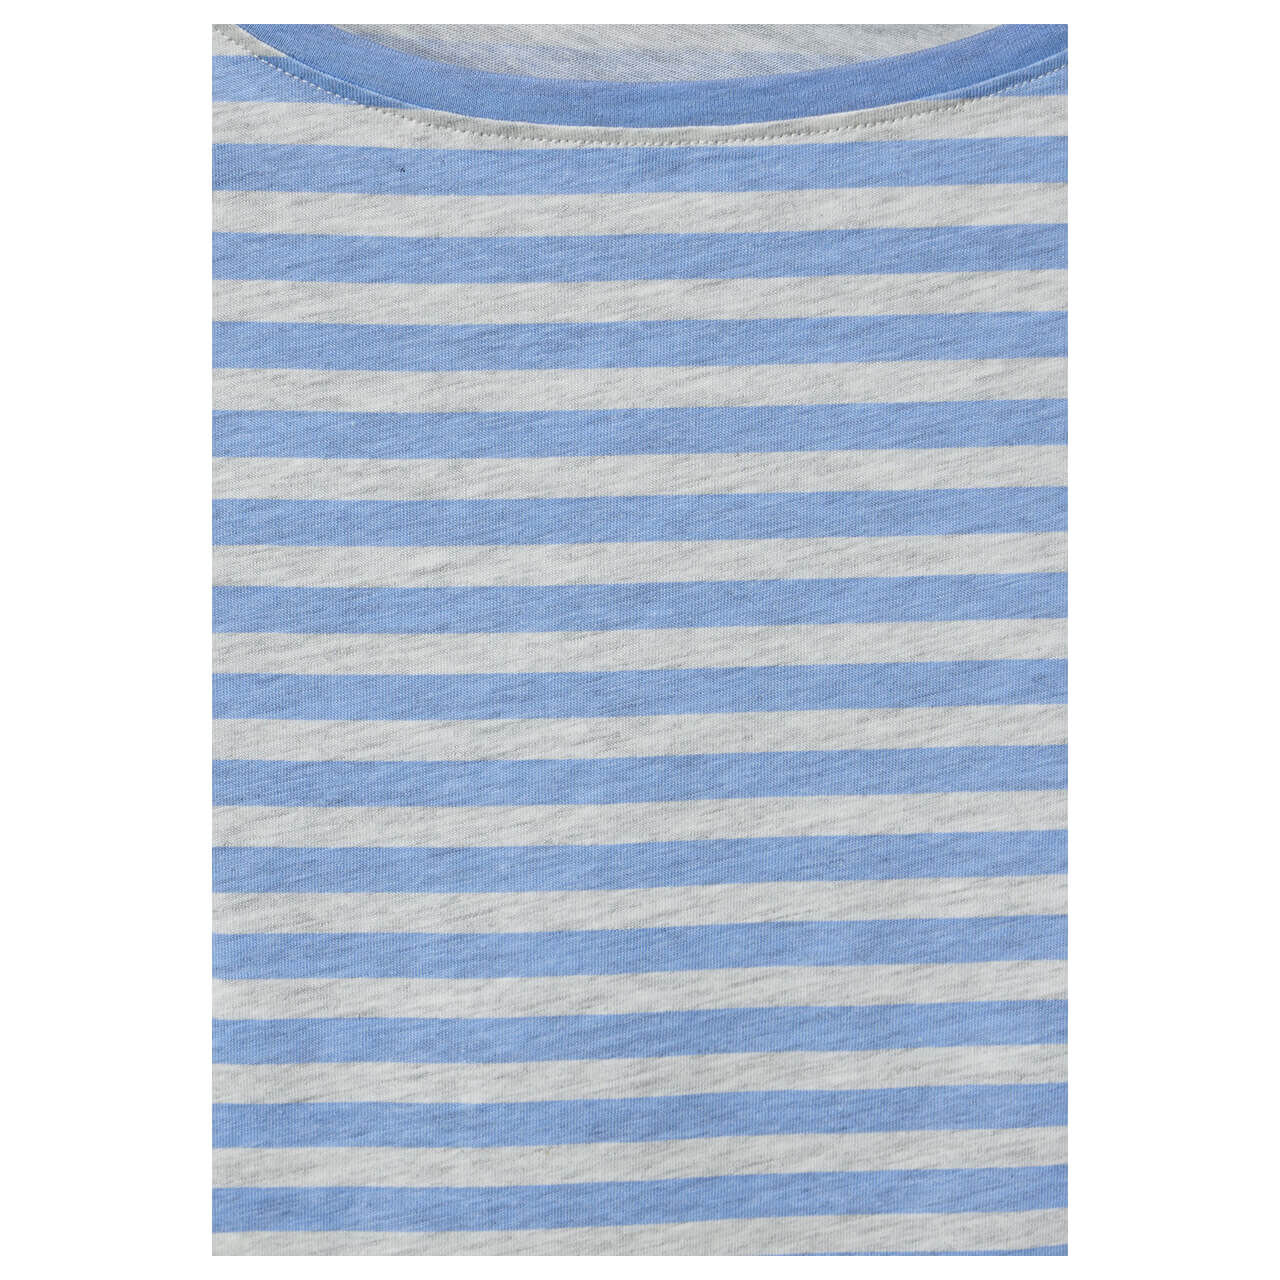 Cecil Damen 3/4 Arm Shirt Boatneck Melange Stripe soda blue